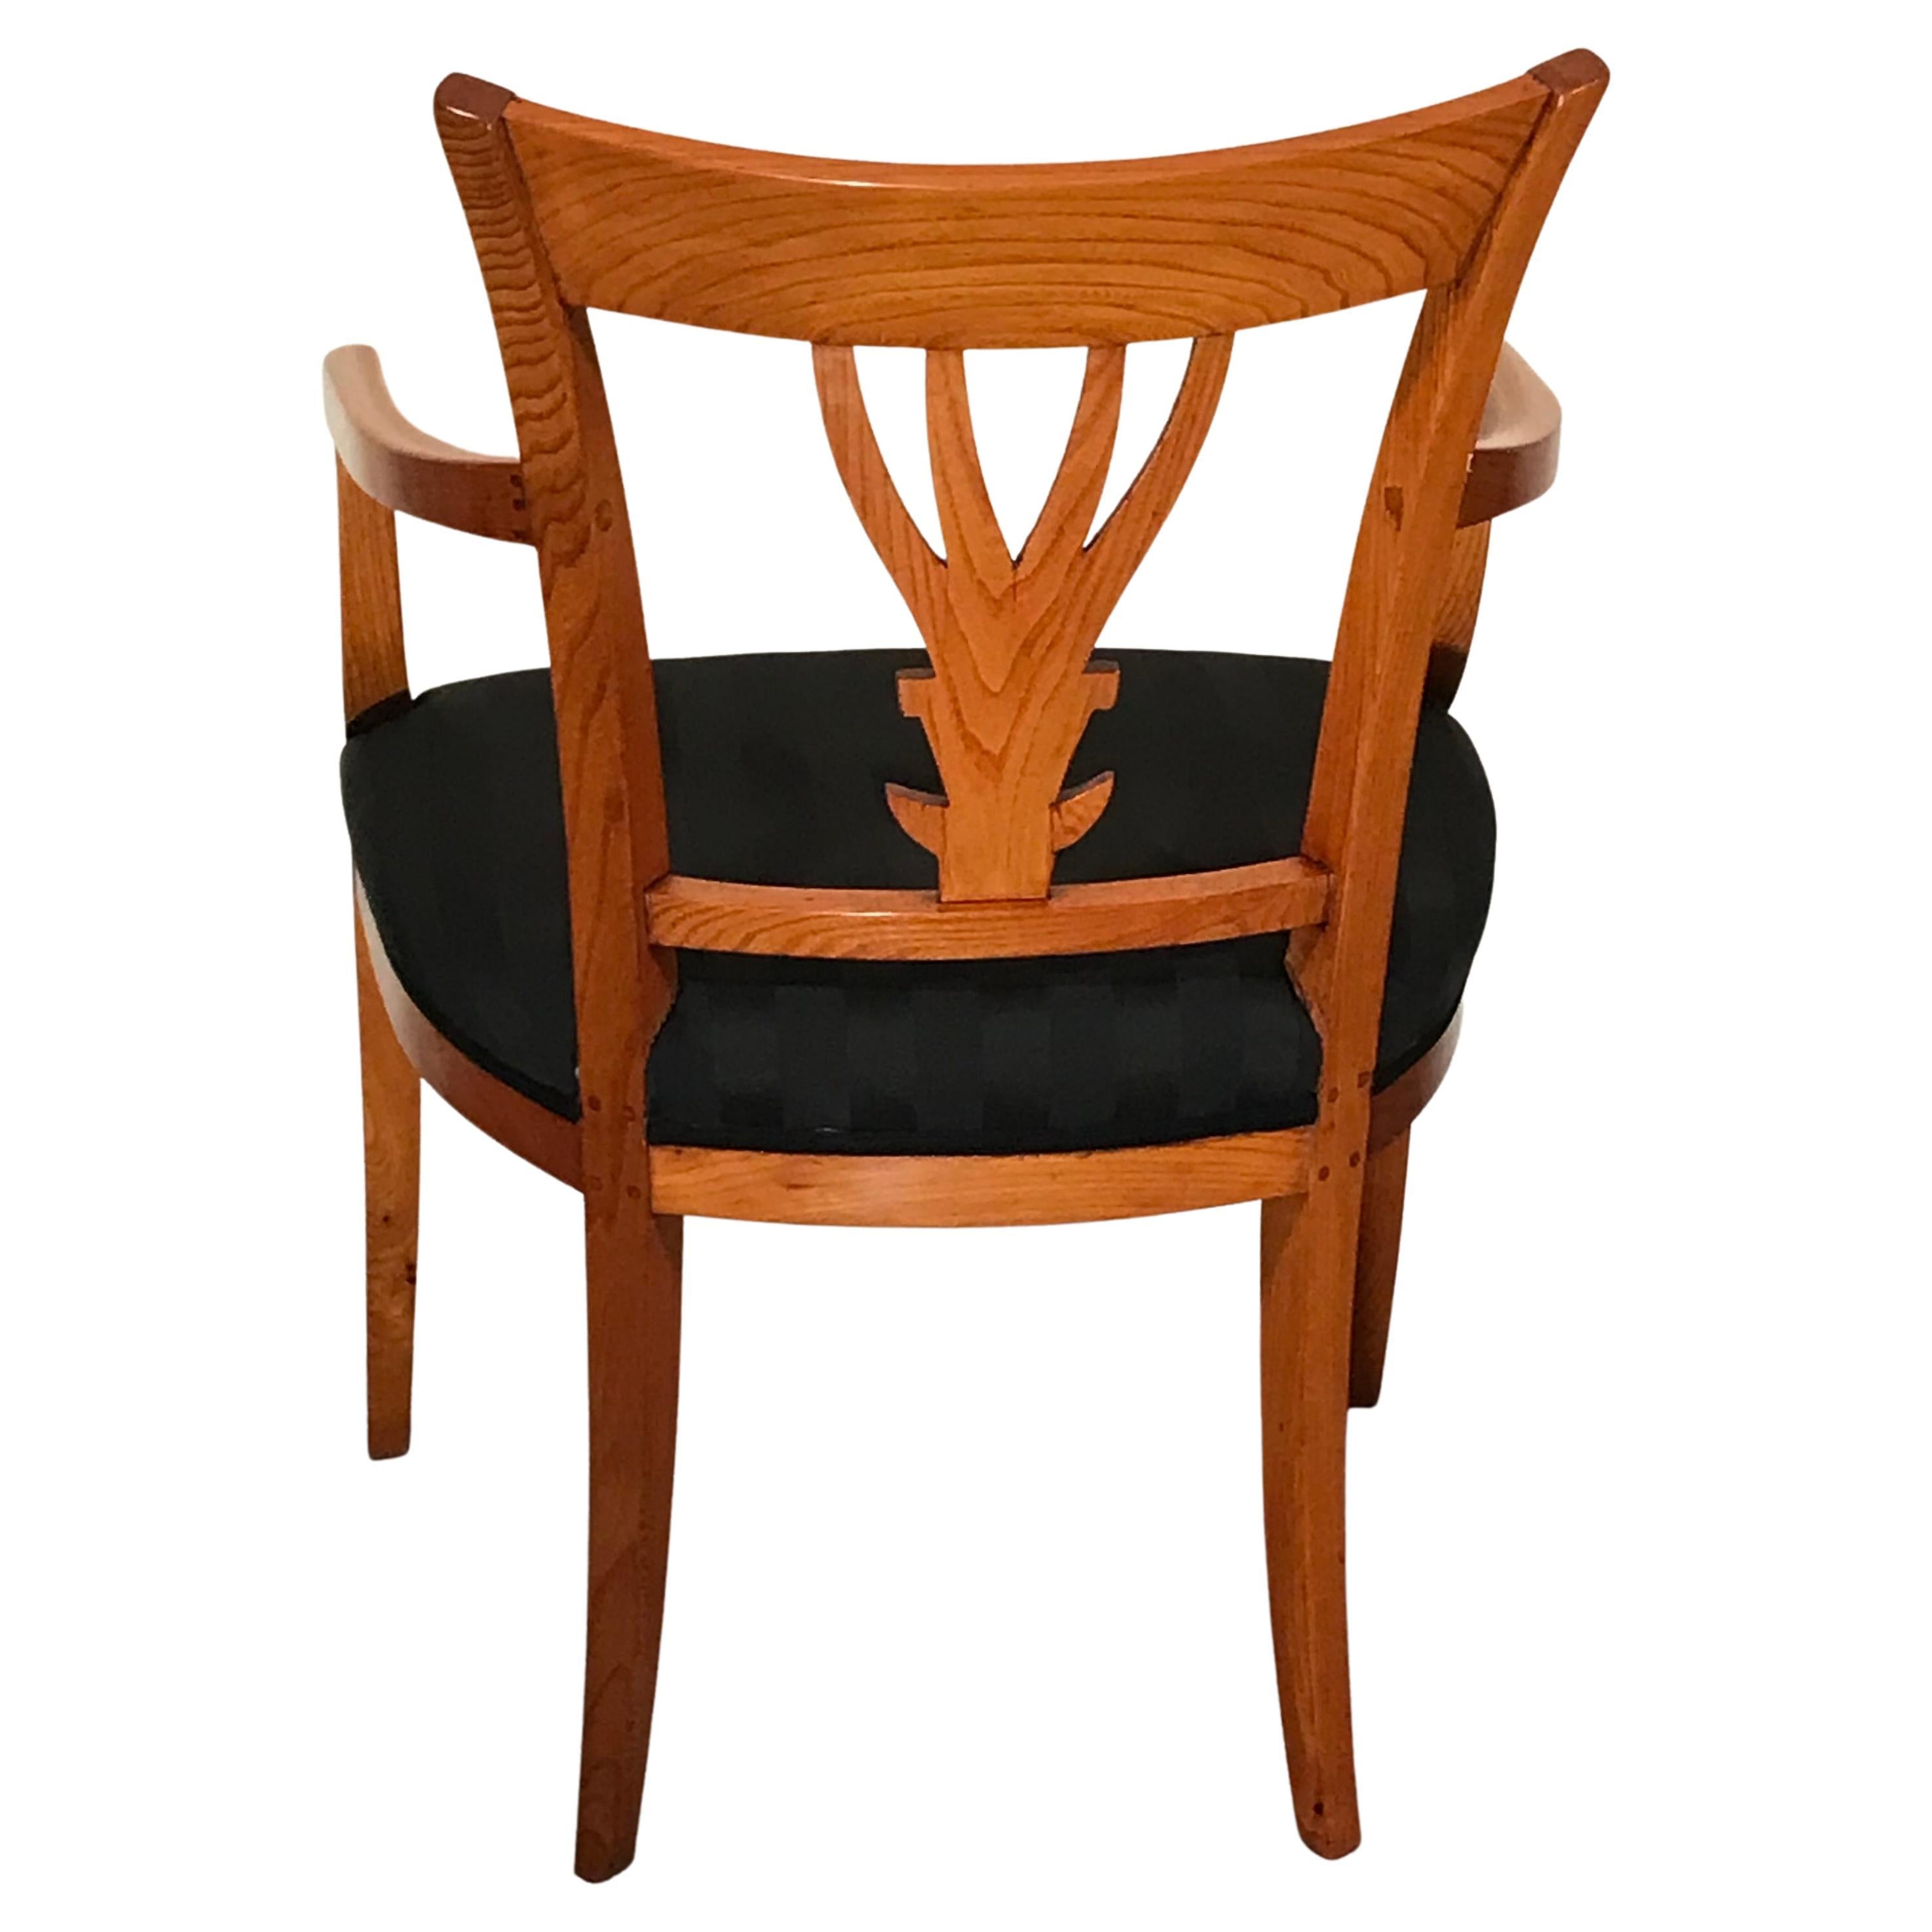 Wunderschön gestalteter neoklassizistischer Sessel aus der Zeit um 1820-30. Der Stuhl kommt aus Südwestdeutschland. Die Rückenlehne hat ein sehr hübsches durchbrochenes Design mit einem handgeschnitzten Blattmuster. Der Sessel ist neu gepolstert und